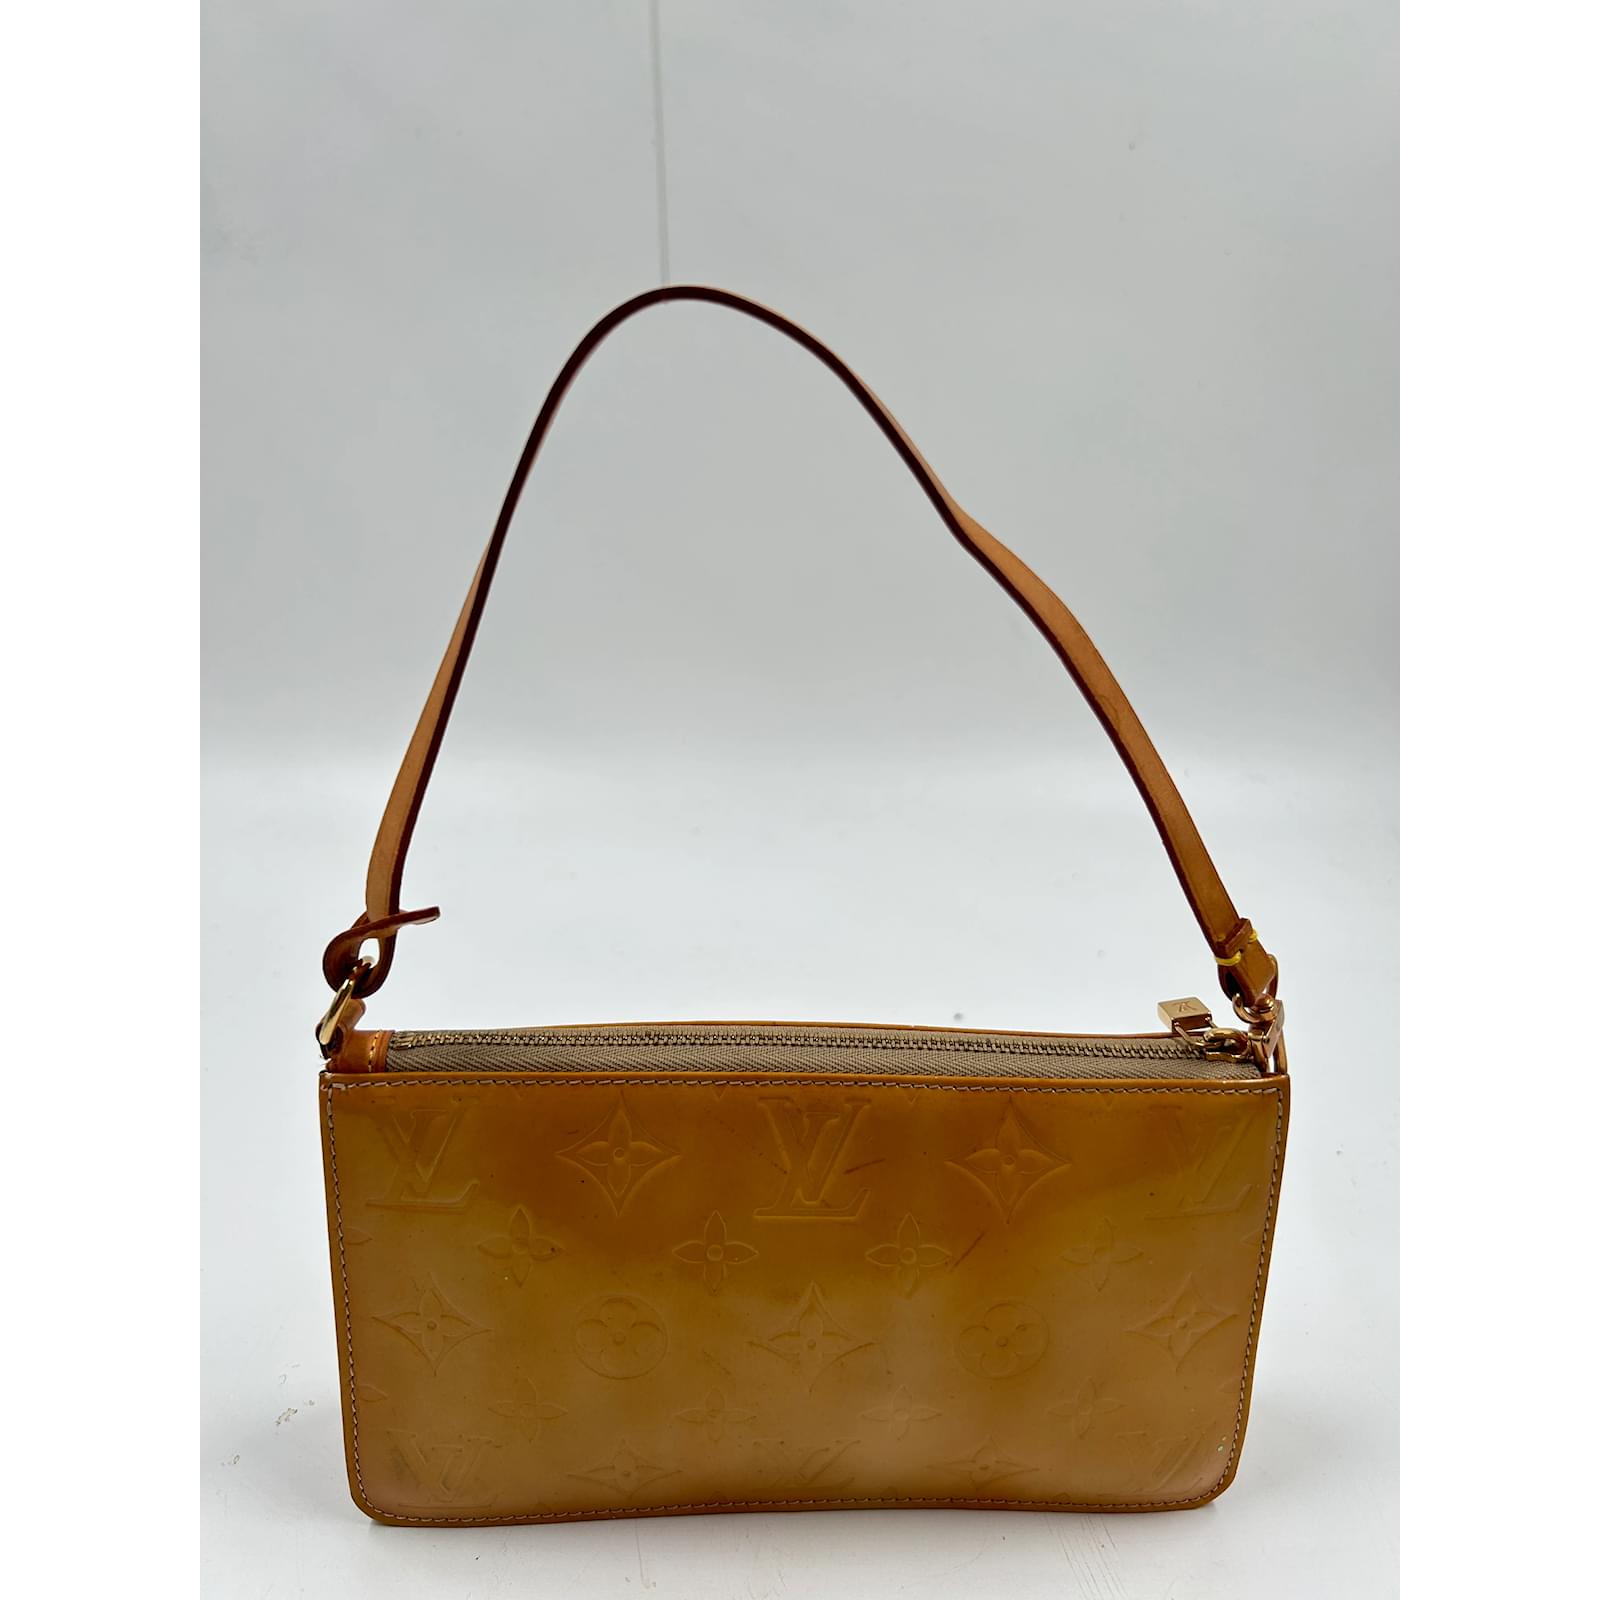 Louis Vuitton Lexington Grey Patent Leather Clutch Bag (Pre-Owned)